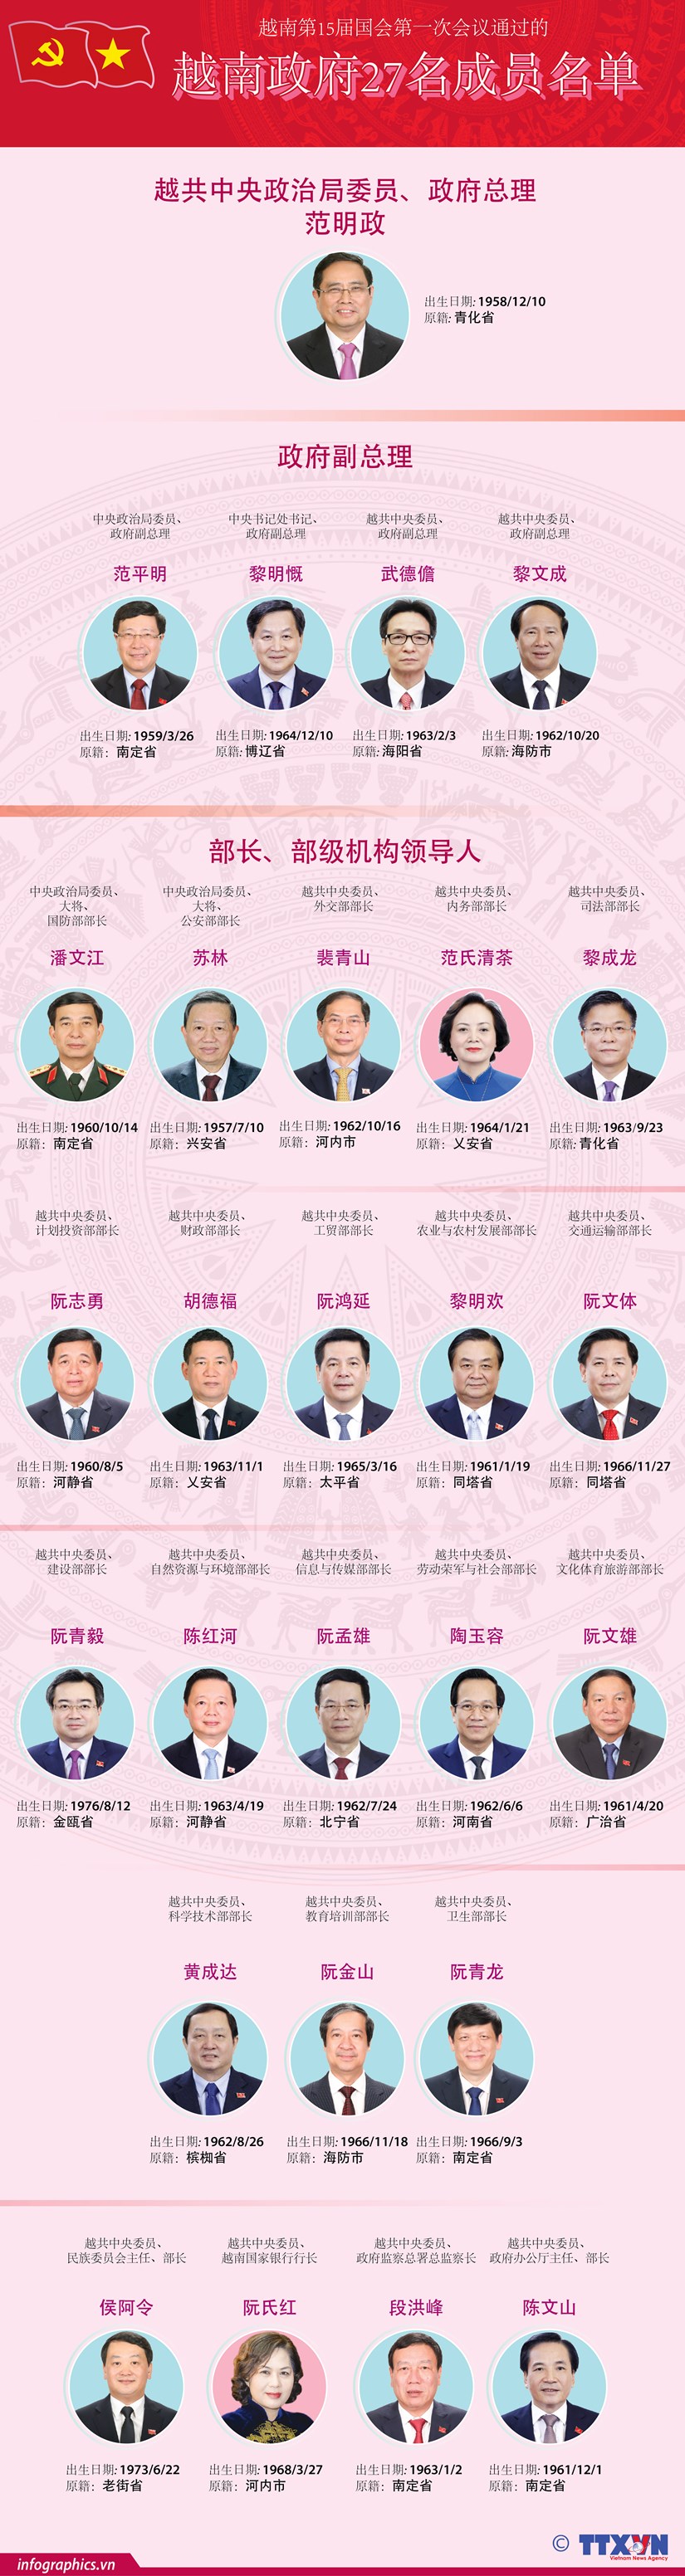 图表新闻：越南第15届国会第一次会议通过的越南政府27名成员名单 hinh anh 1